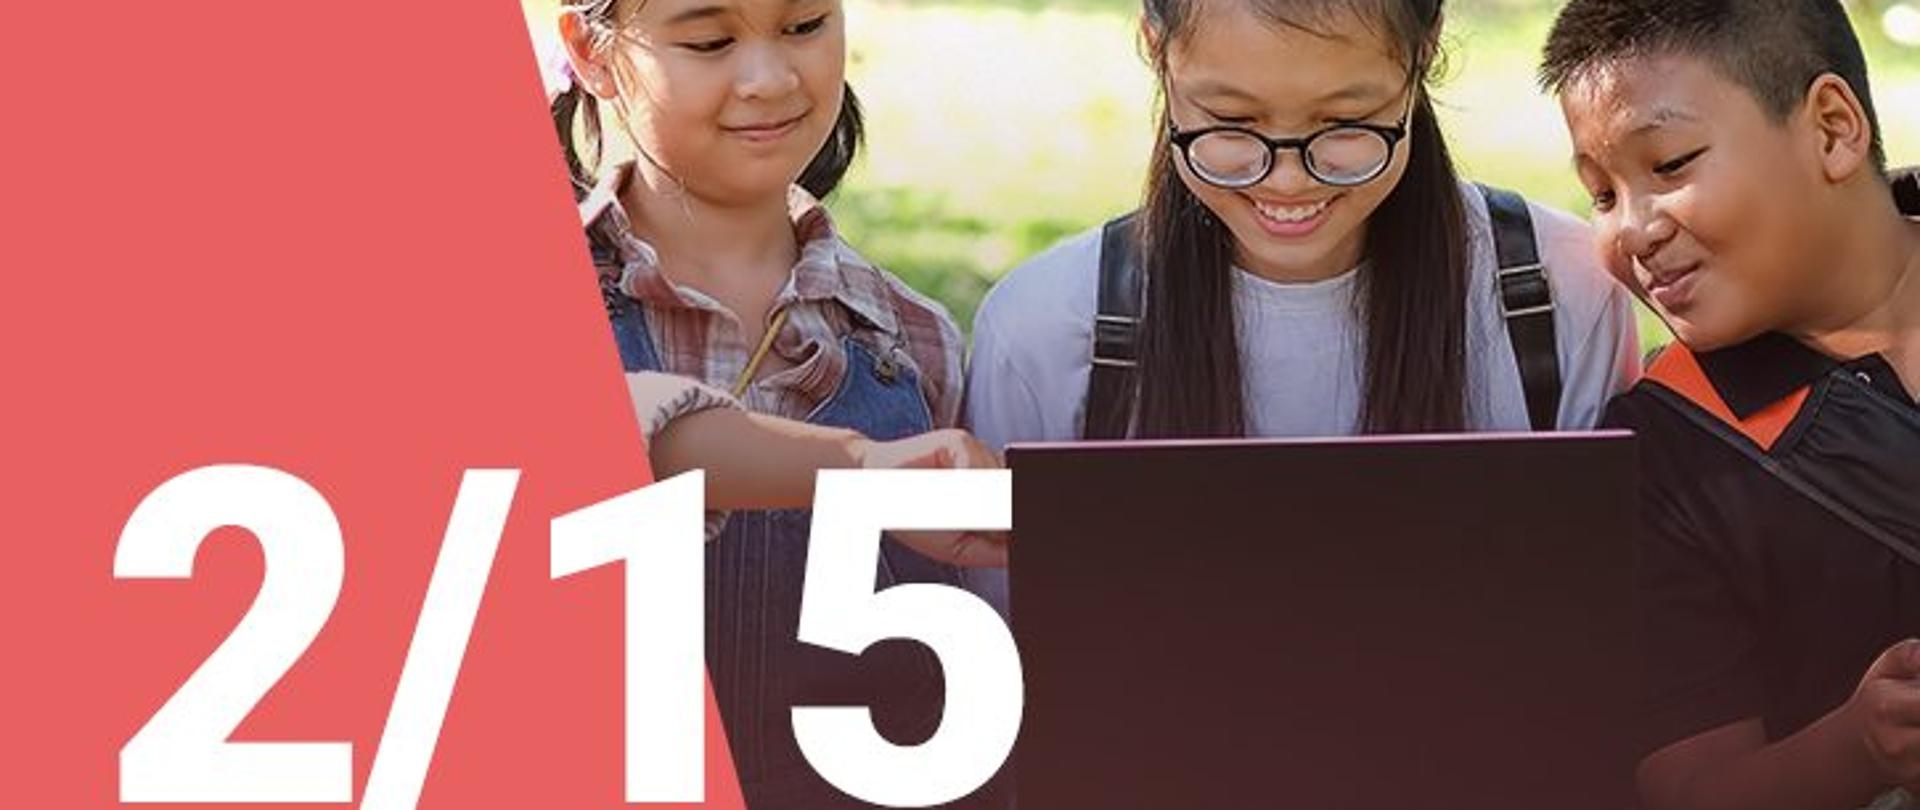 Na zdjęciu widzimy dwie dziewczynki oraz chłopca patrzących z uśmiechem na ekran laptopa. W dolnym lewym roku widoczna jest numeracja zdjęcia (2/15)